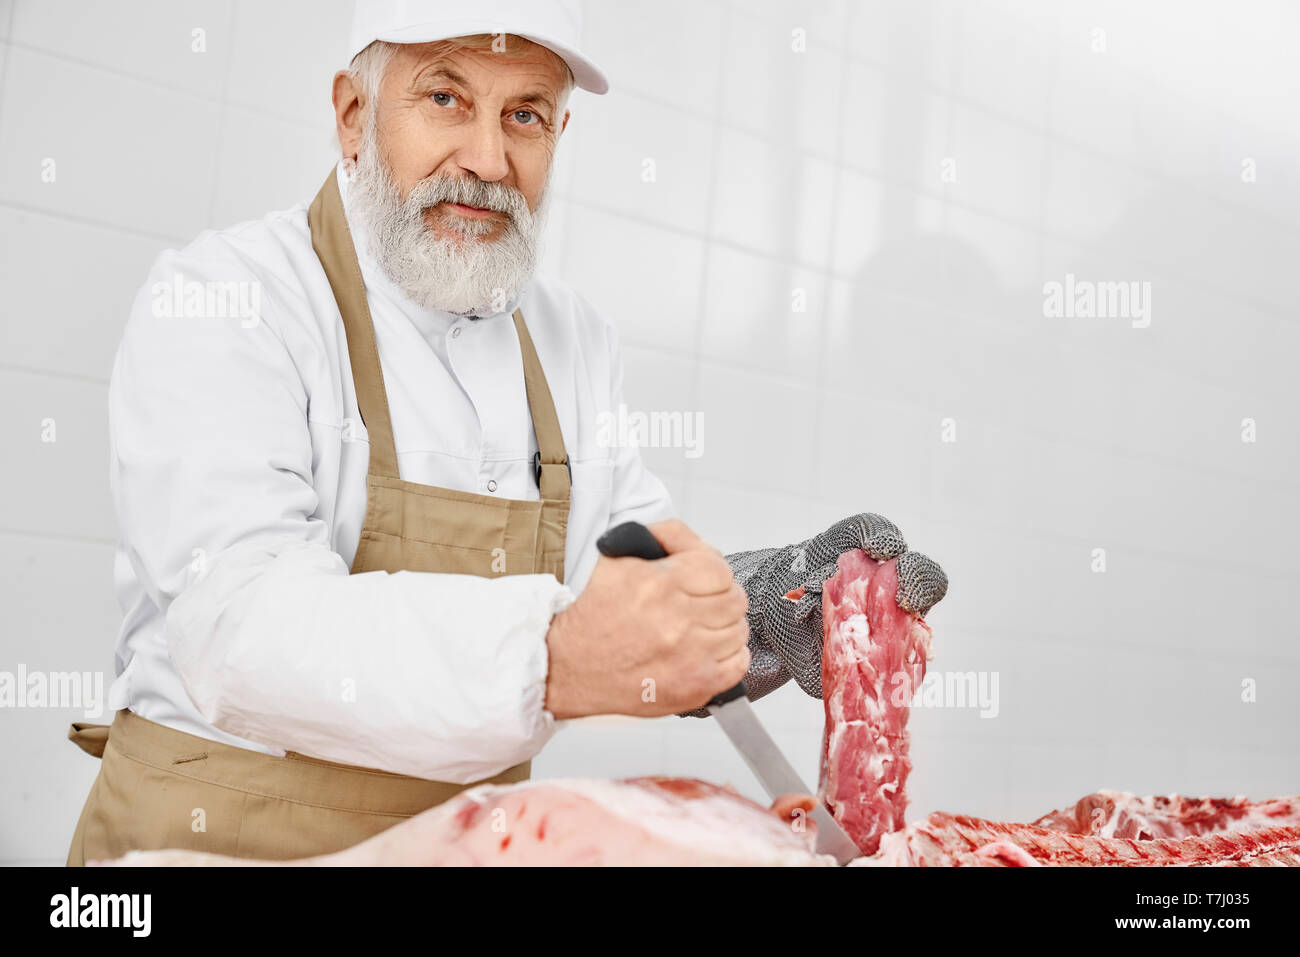 Gut aussehender älterer Mann arbeitet als Metzger holding Messer und Fleisch, an der Kamera schaut. Arbeitnehmer tragen in weiße Uniform, braune Schürze und spezielle Handschuhe schneiden frisches Schweinefleisch Schlachtkörper. Stockfoto